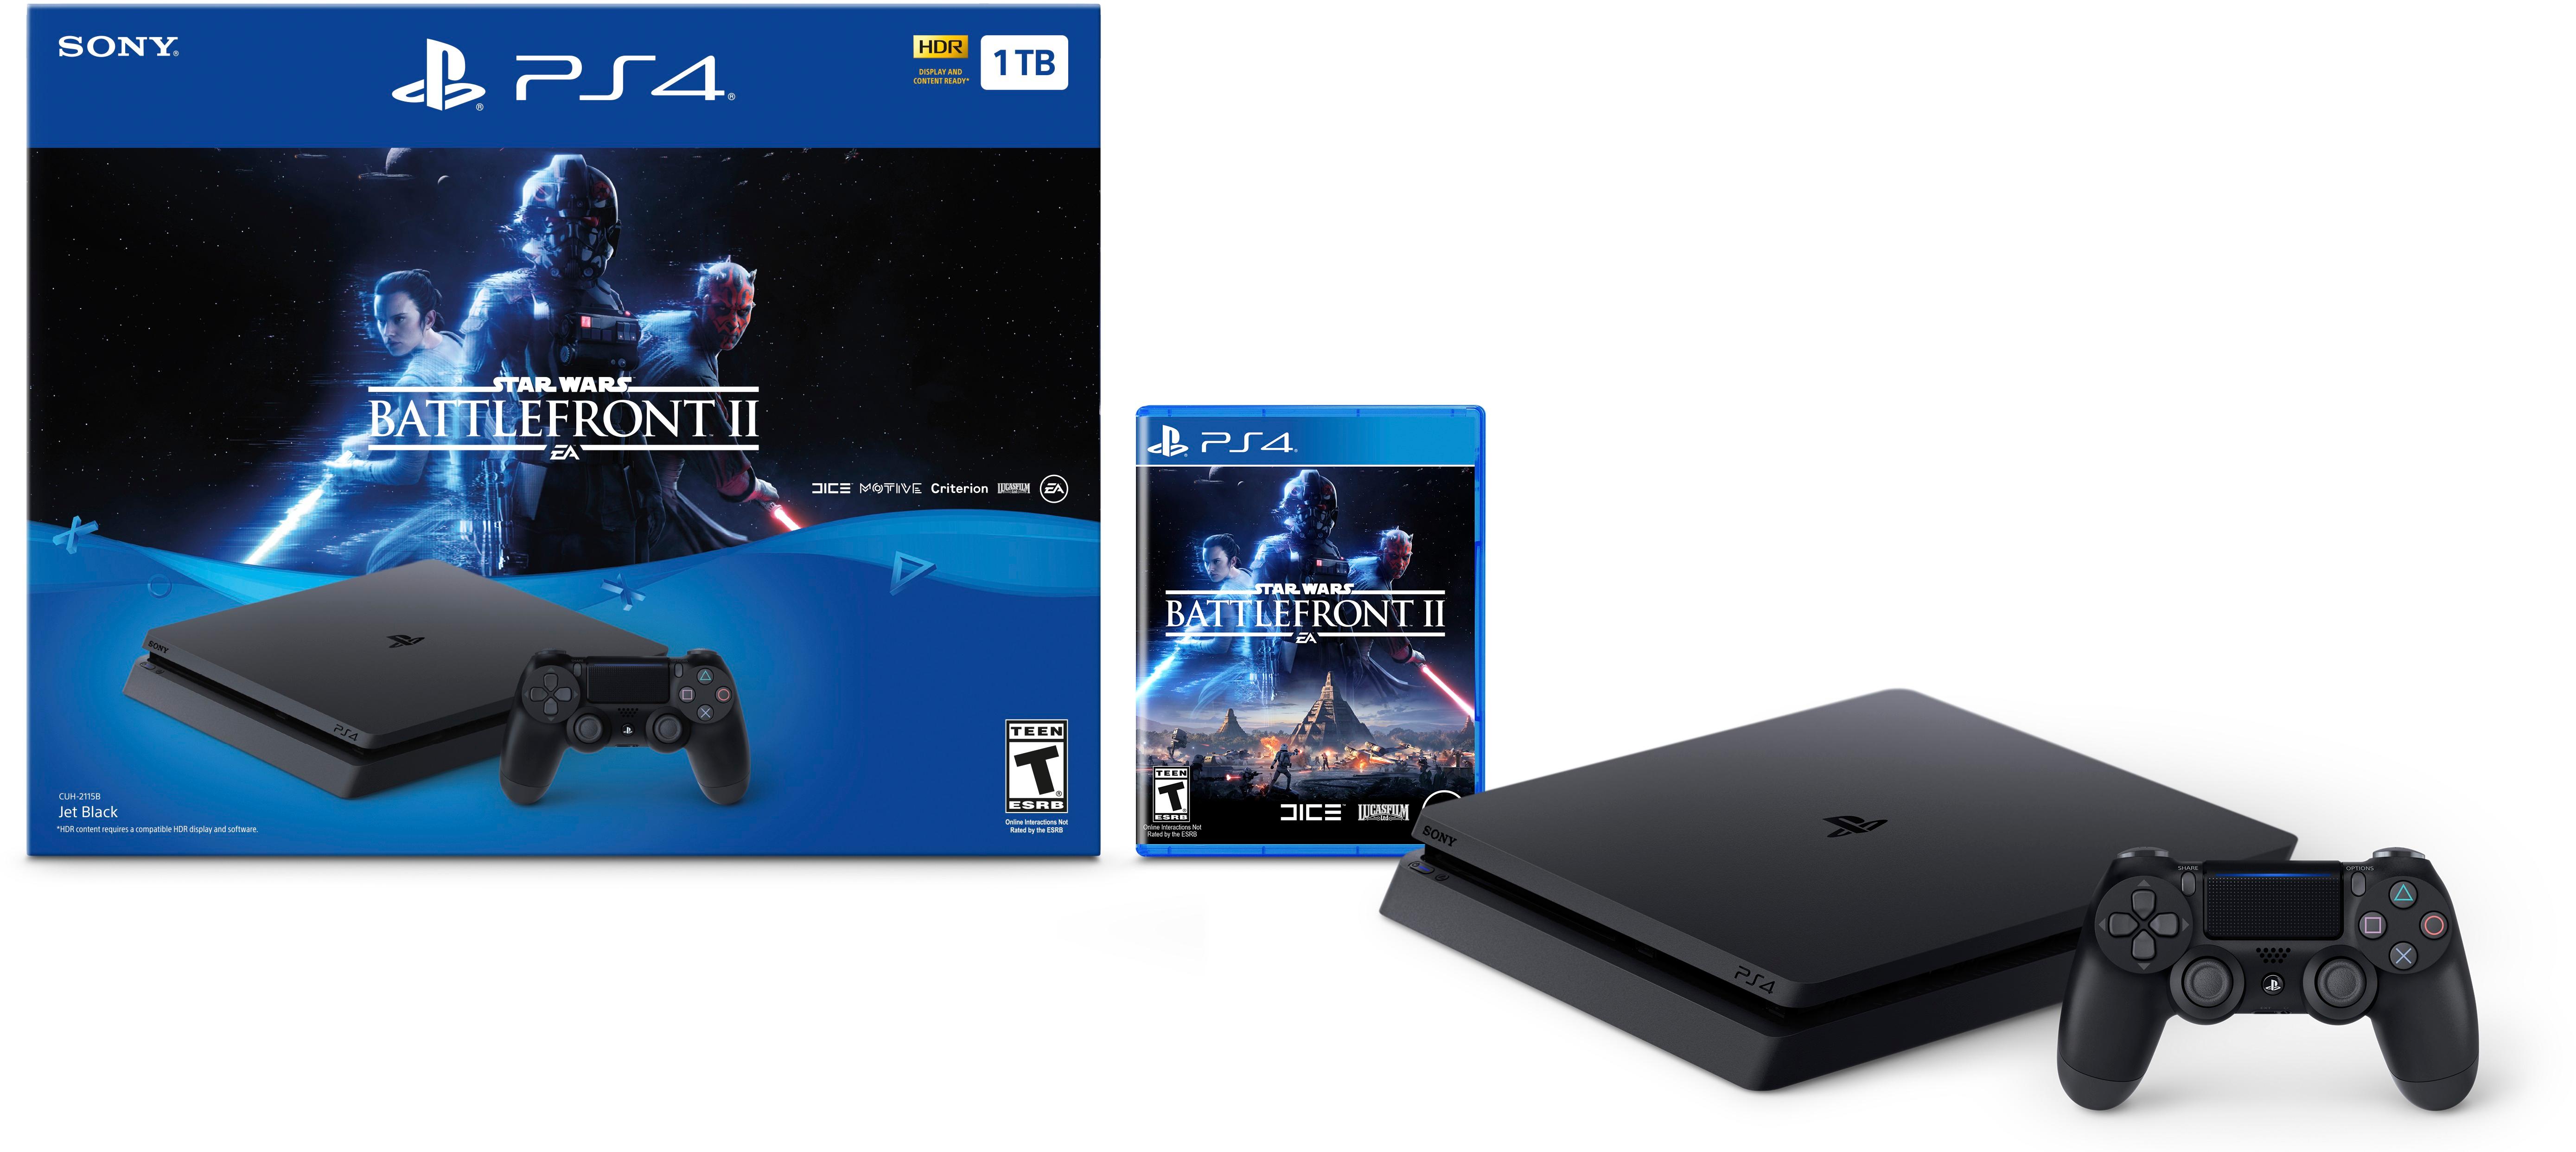 Star Wars Battlefront II PS4 Pro Bundle Revealed - IGN